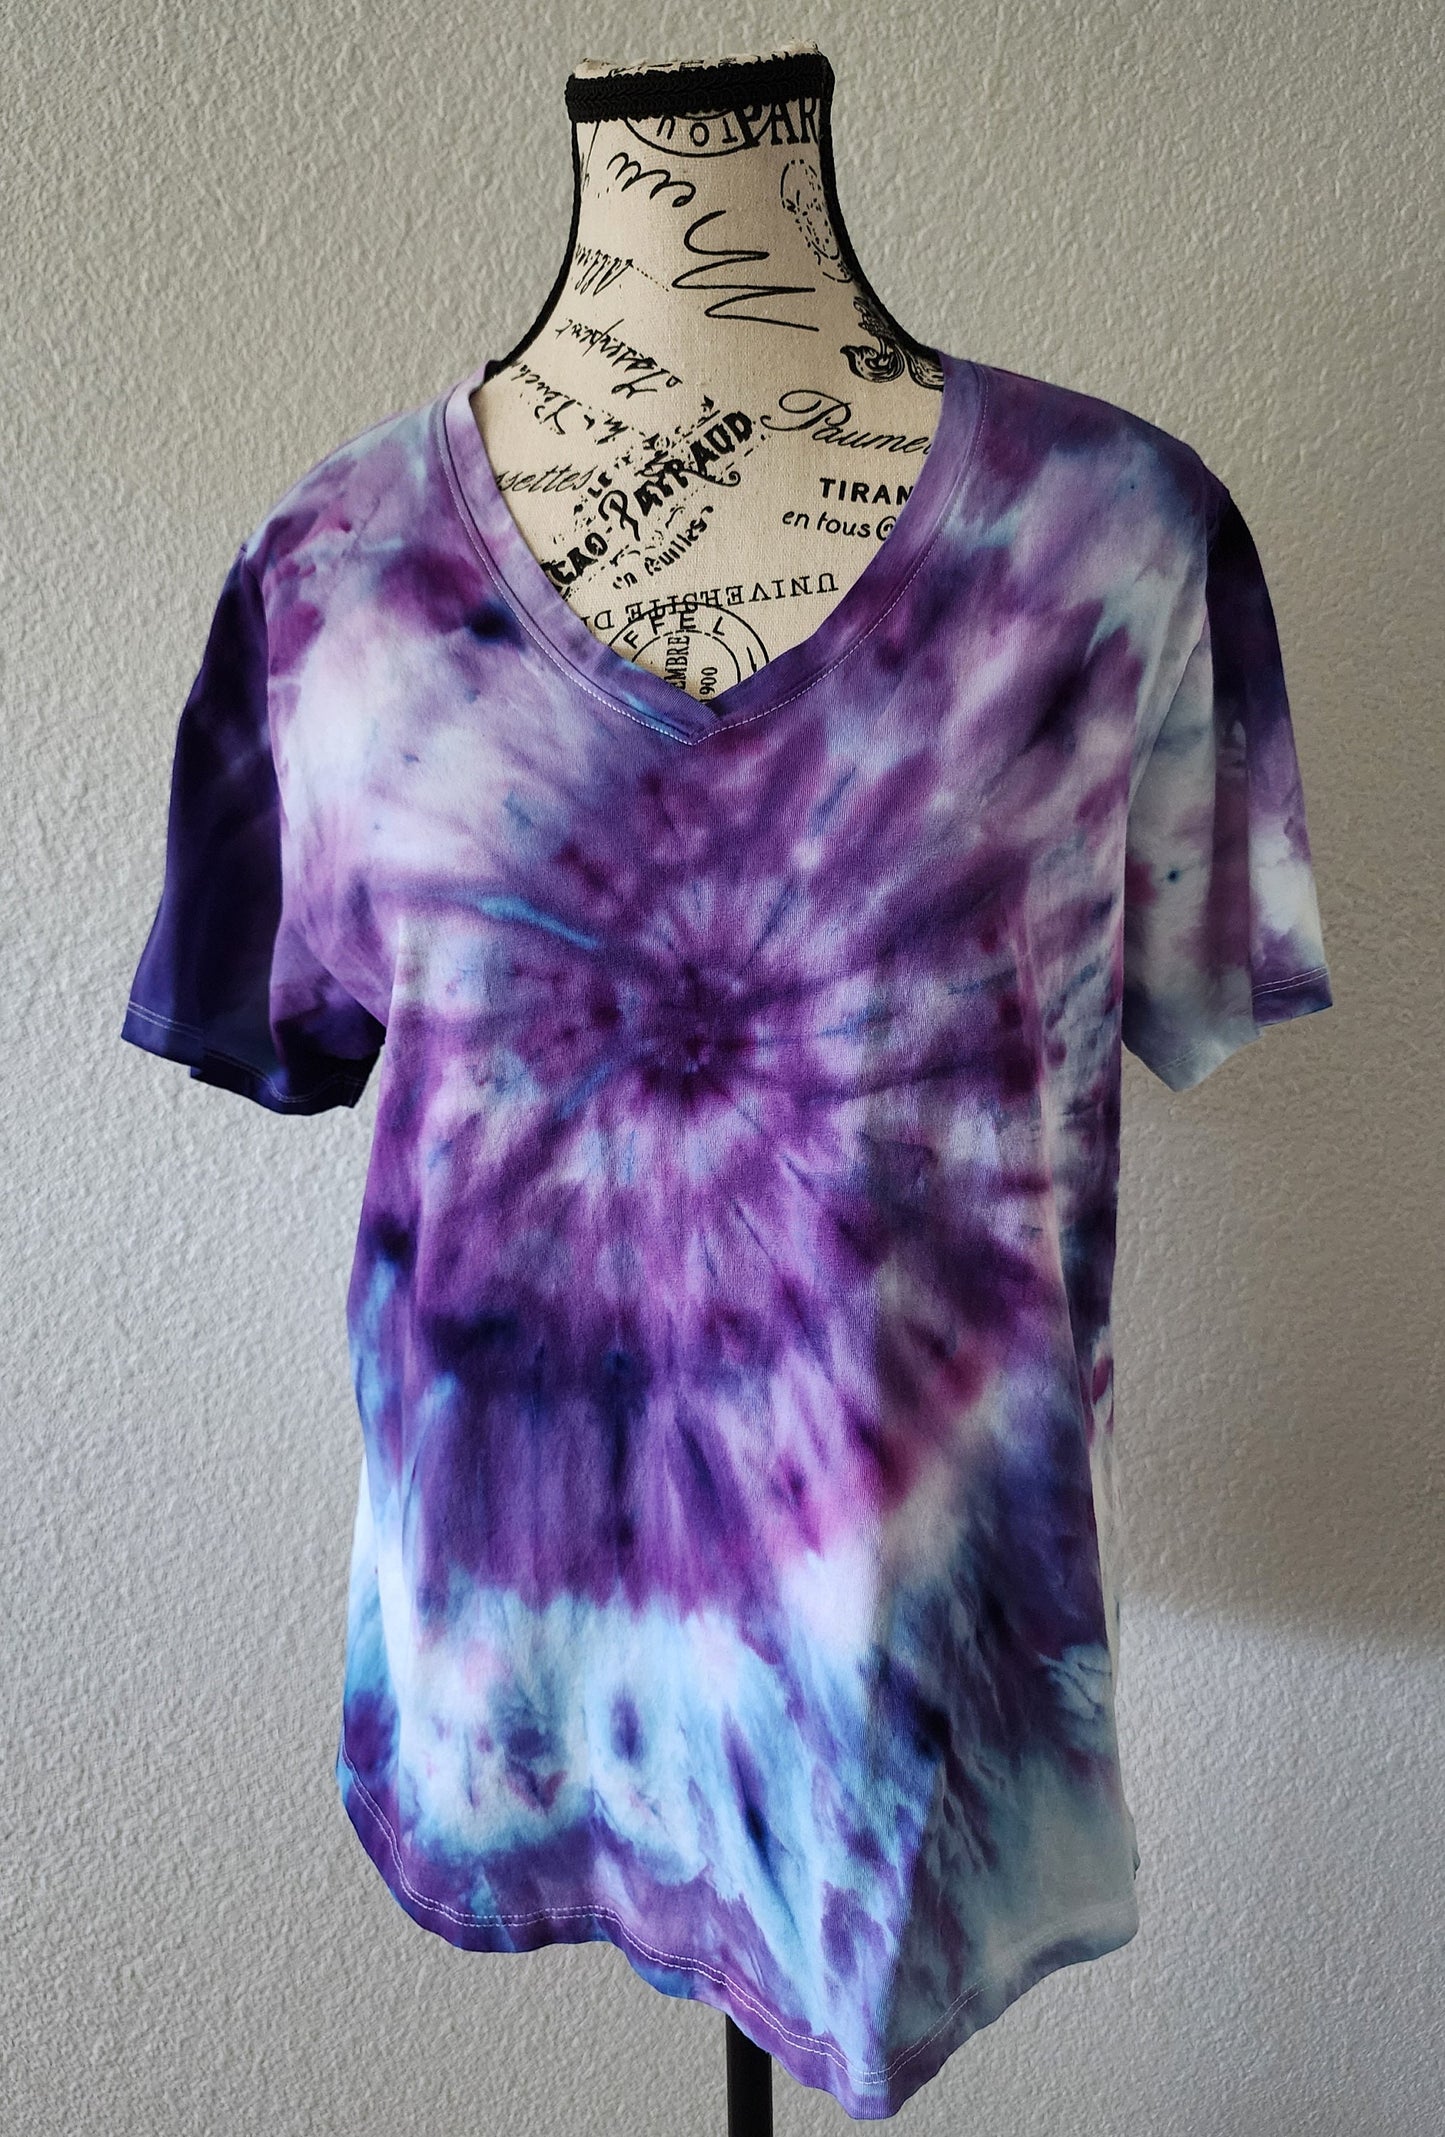 Purple Gravity Spiral Tie Dye T Shirt Customizable Women's 1XL